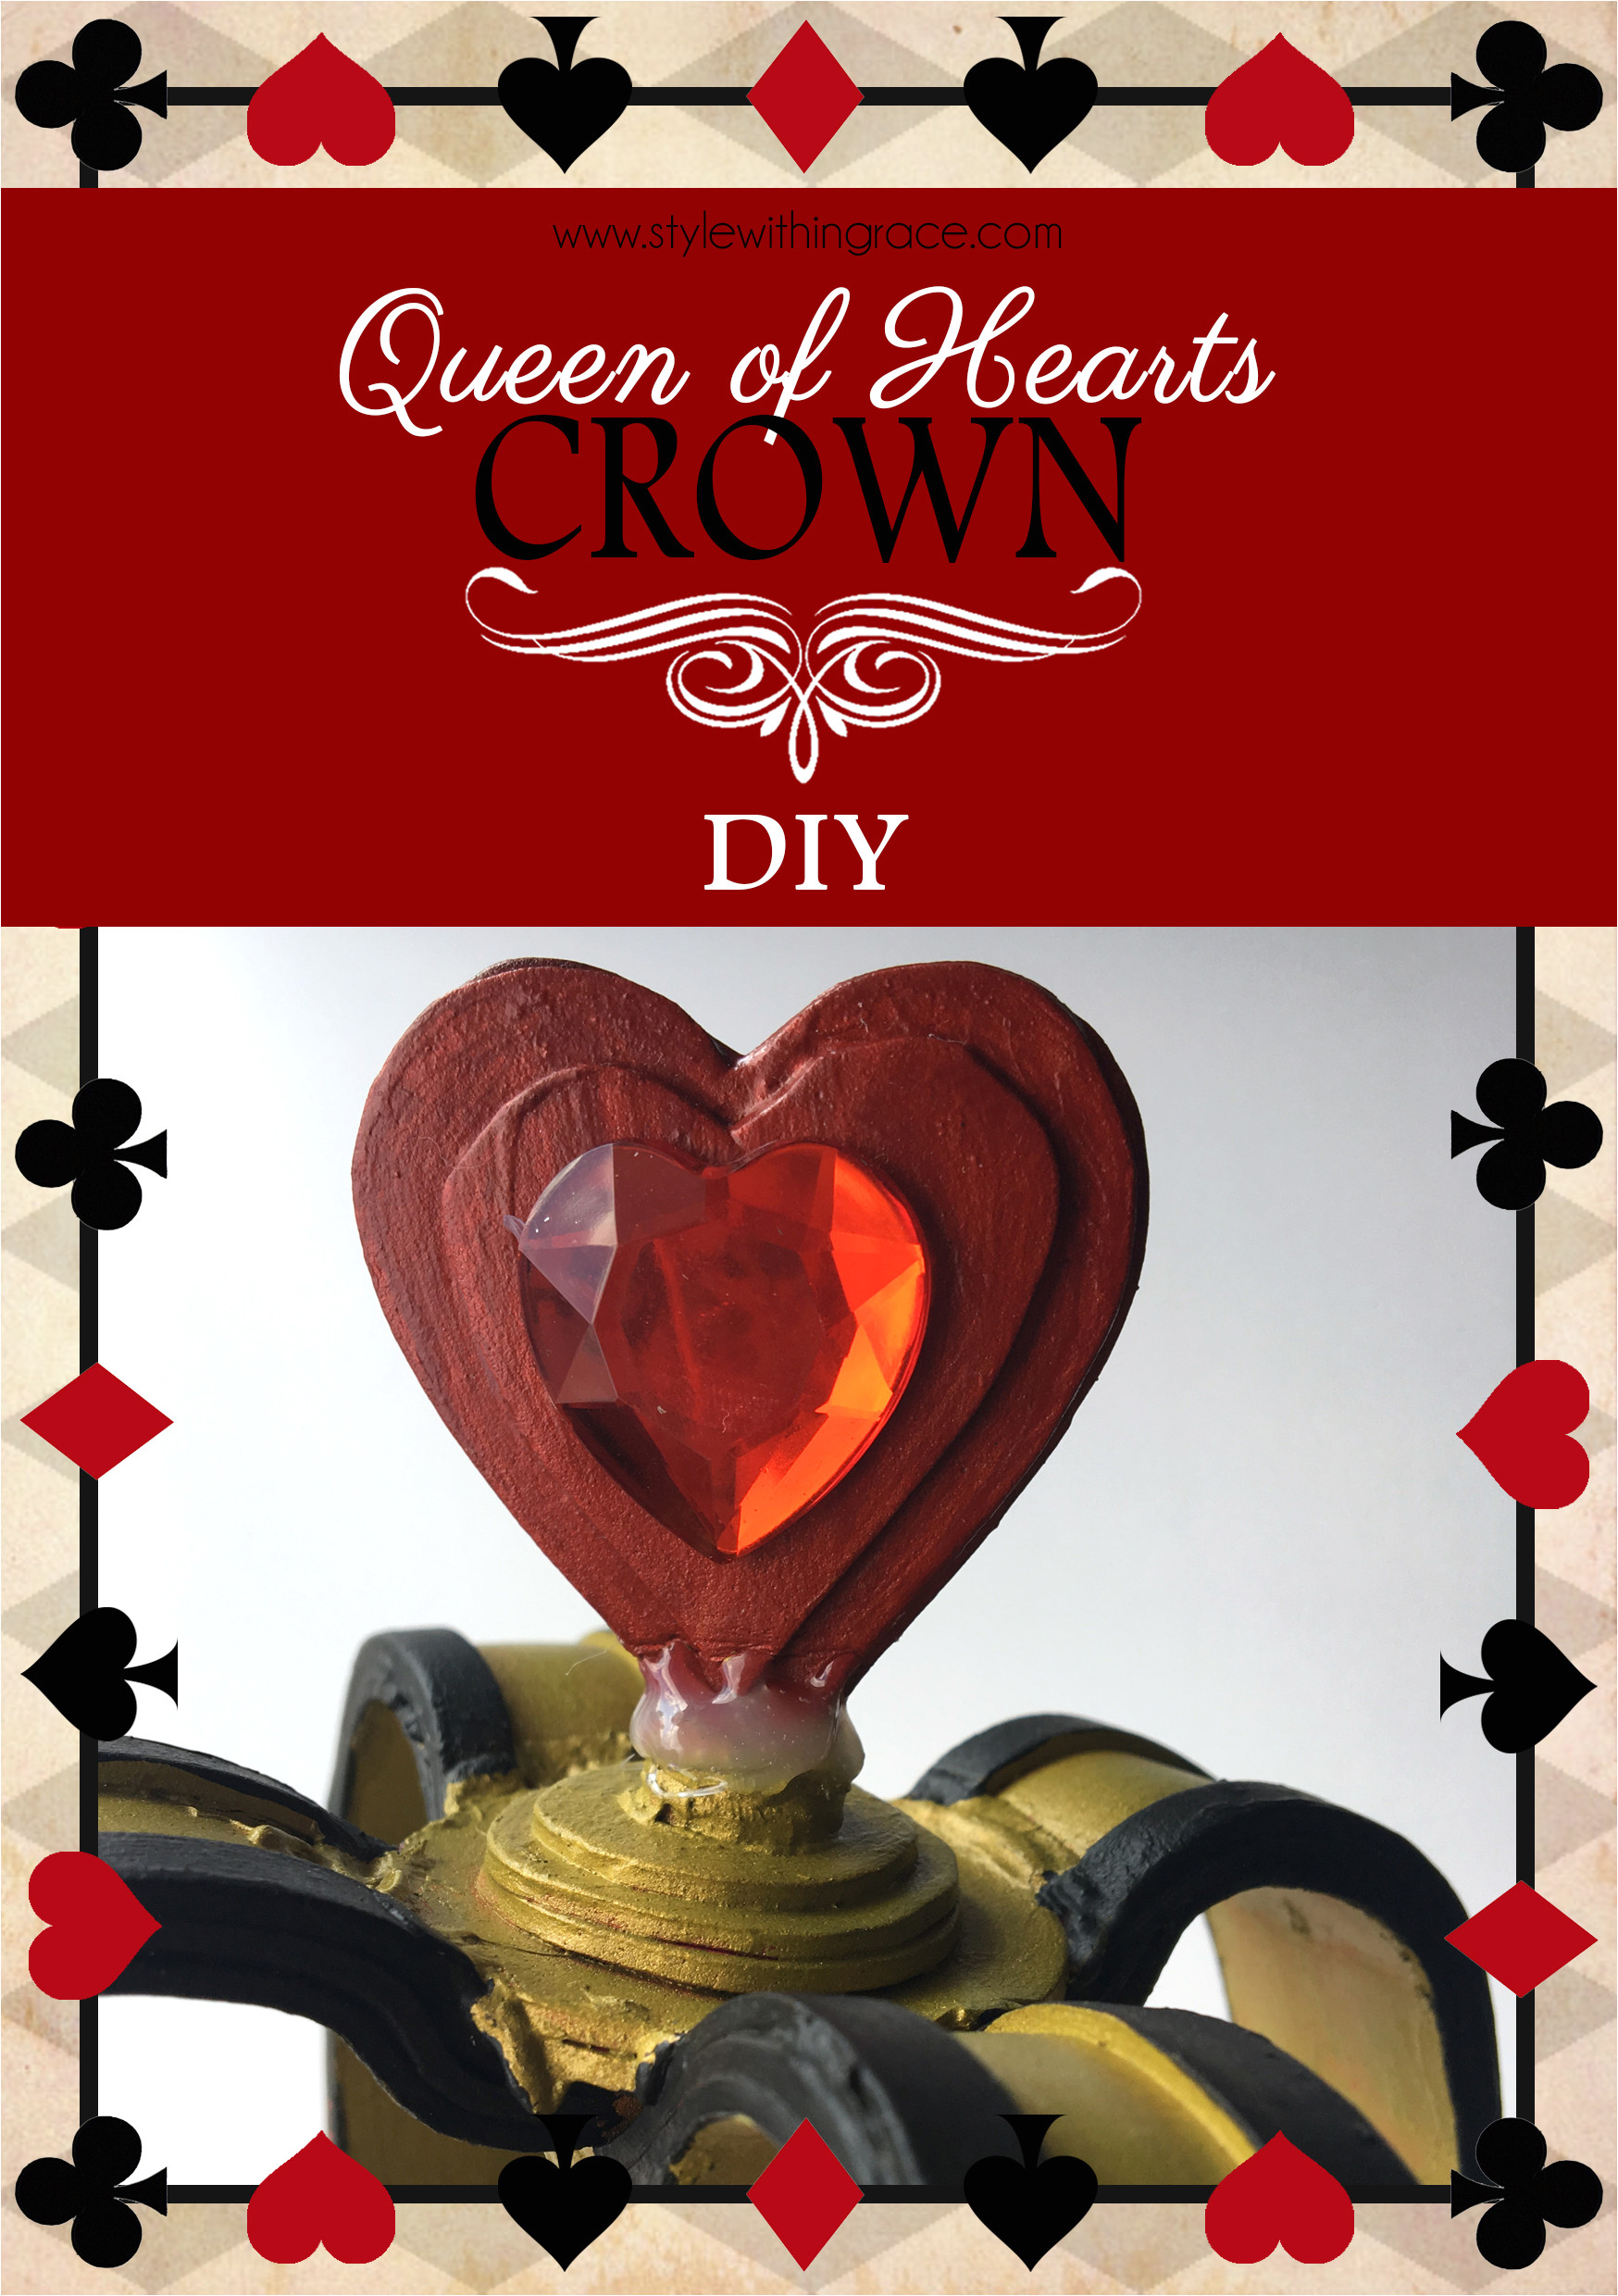 queen of hearts crown diy title 1 jpg